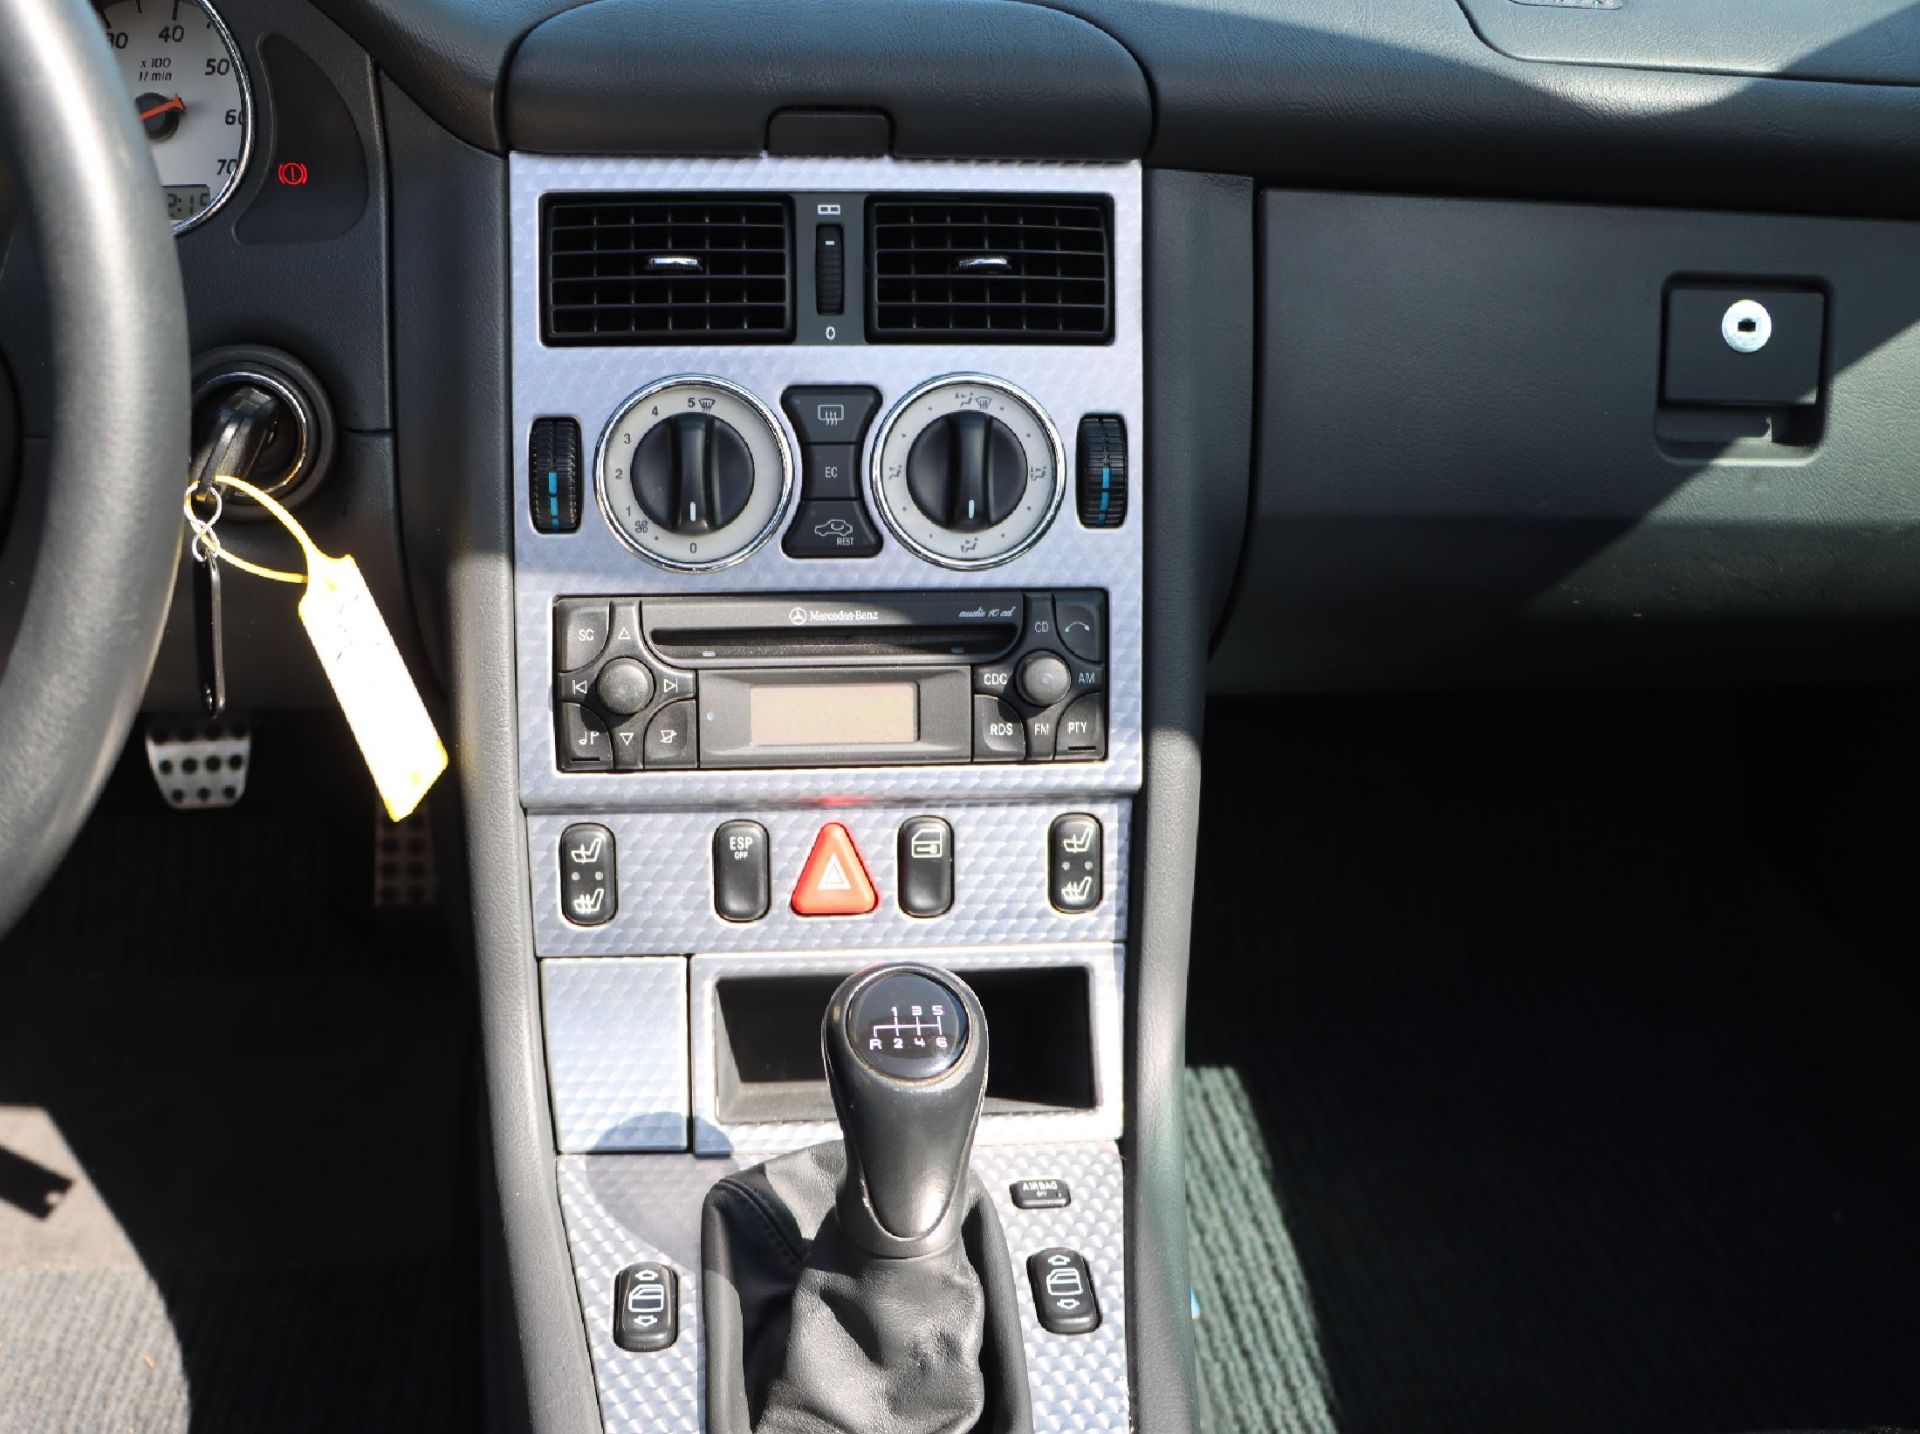 Mercedes- Benz SLk 200, Fahrgestellnummer: - Image 5 of 9